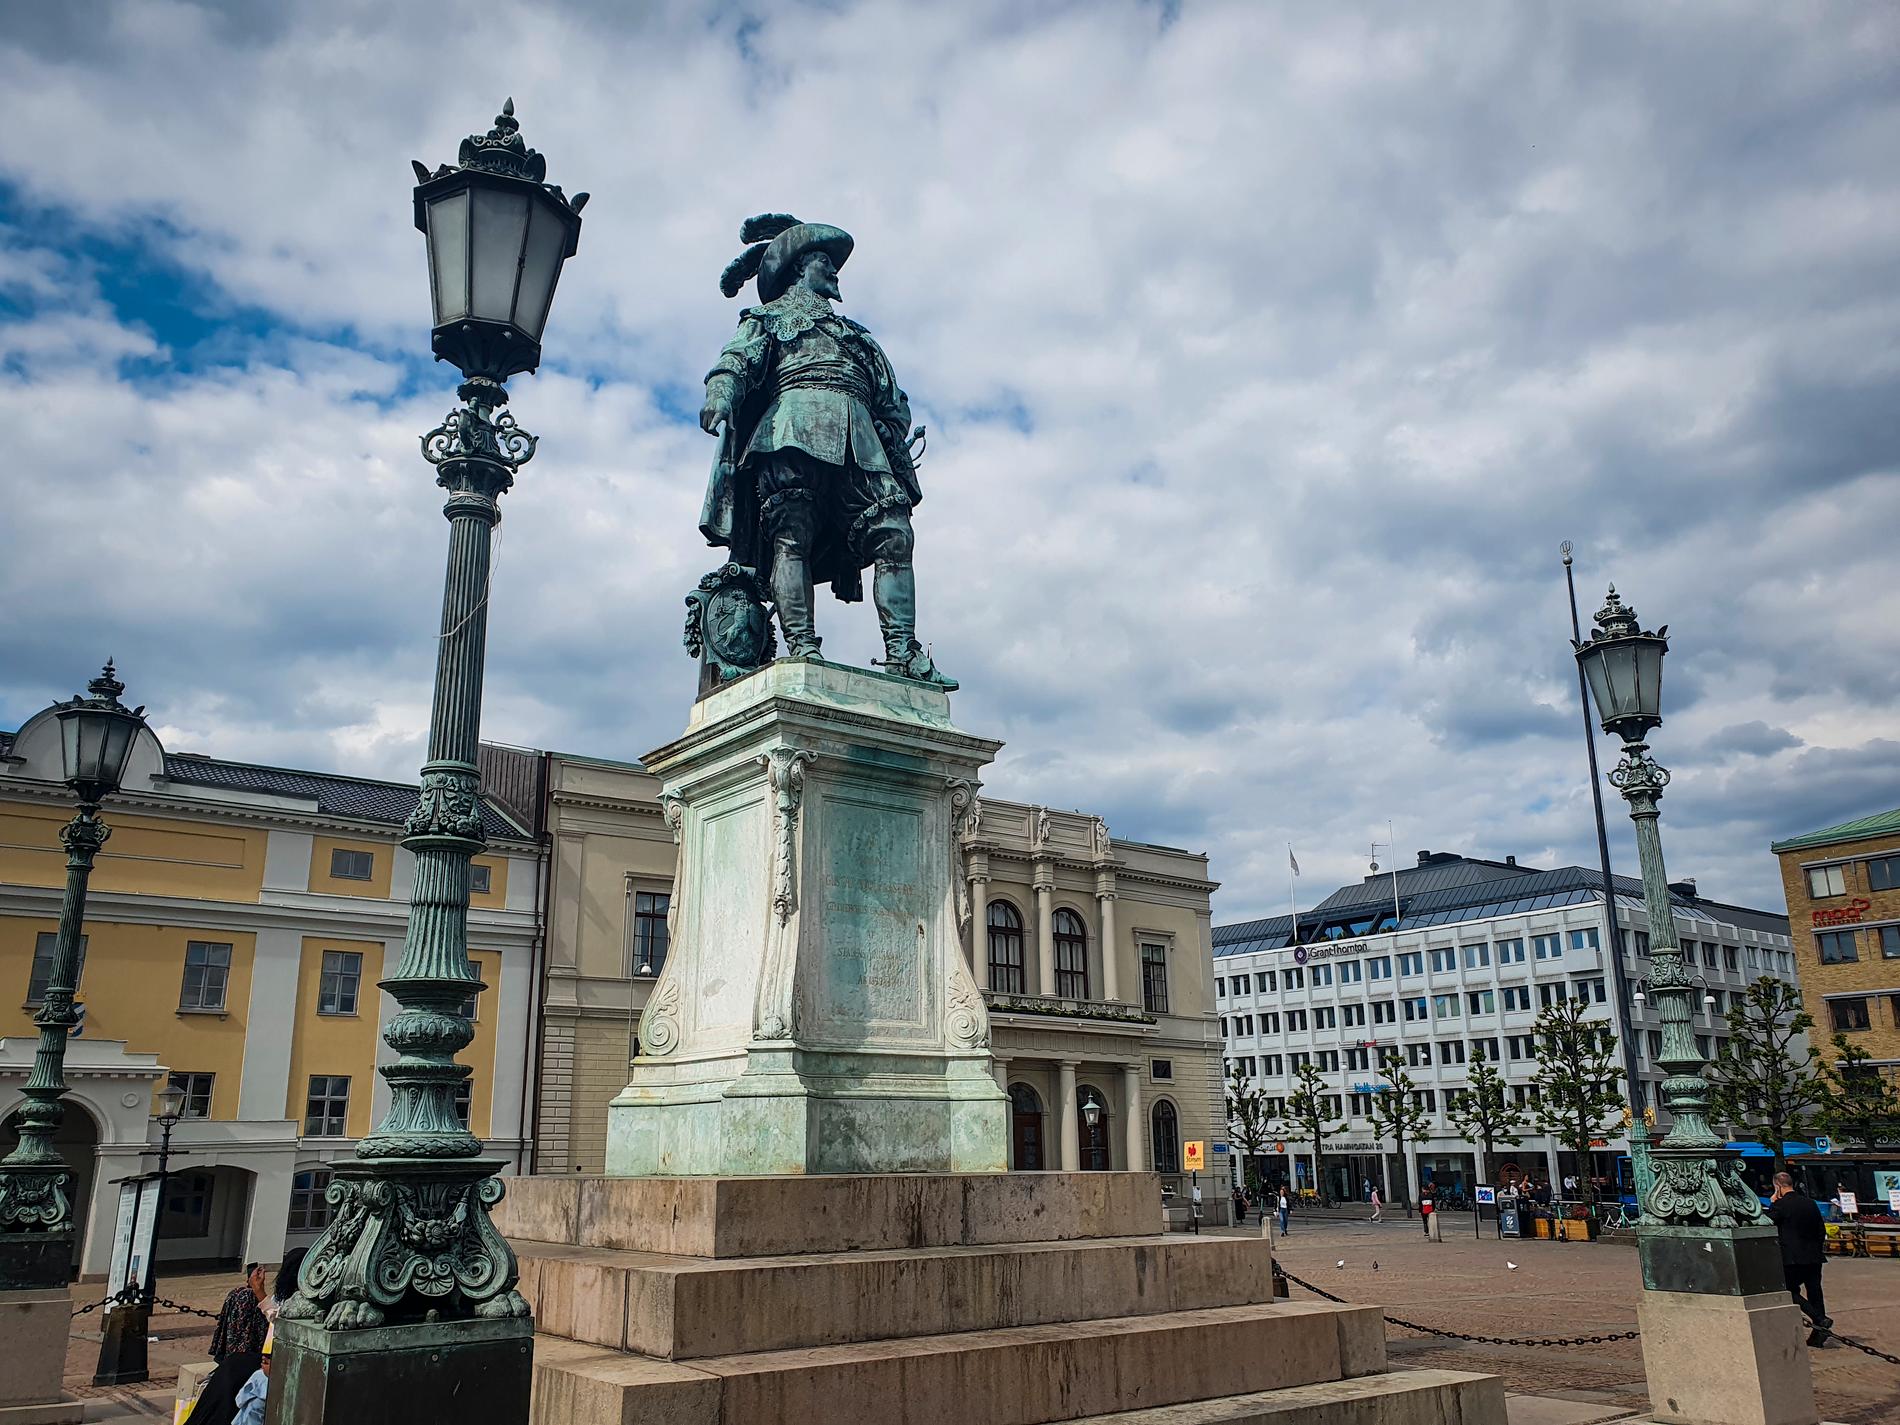 "Här ska staden ligga!" Så sade Gustav II Adolf, enligt en känd legend, när han pekade ut platsen för det nuvarande Göteborg. Nu står kungen staty på Gustaf Adolfs torg och kan mysa åt stadens 400-årsfirande på fredagen.